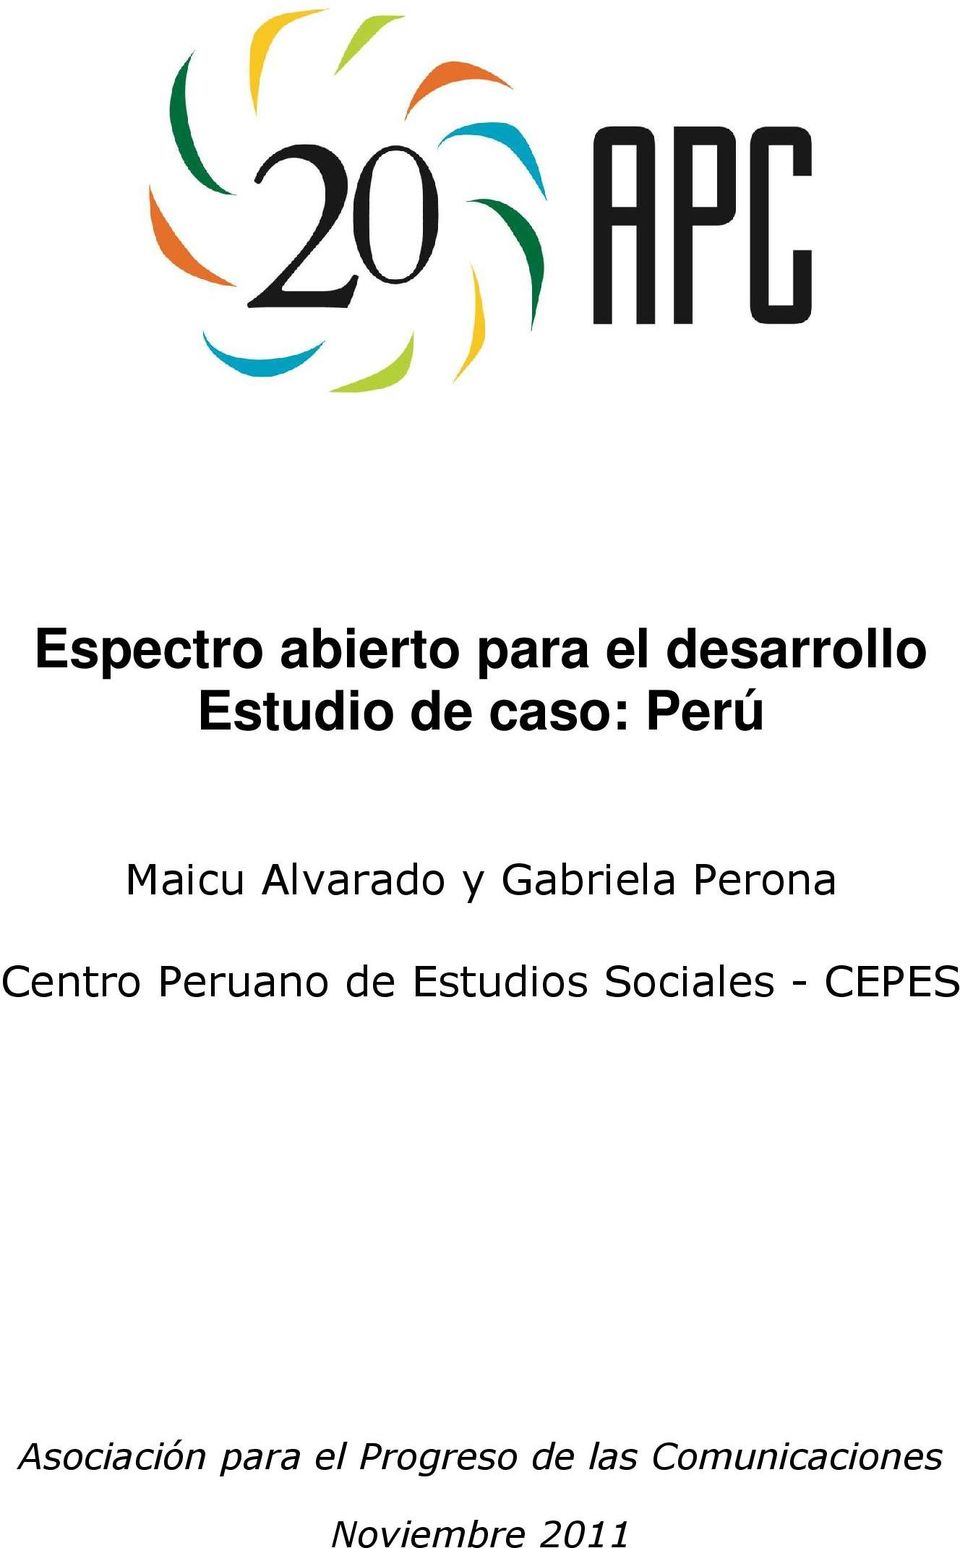 Centro Peruano de Estudios Sociales - CEPES